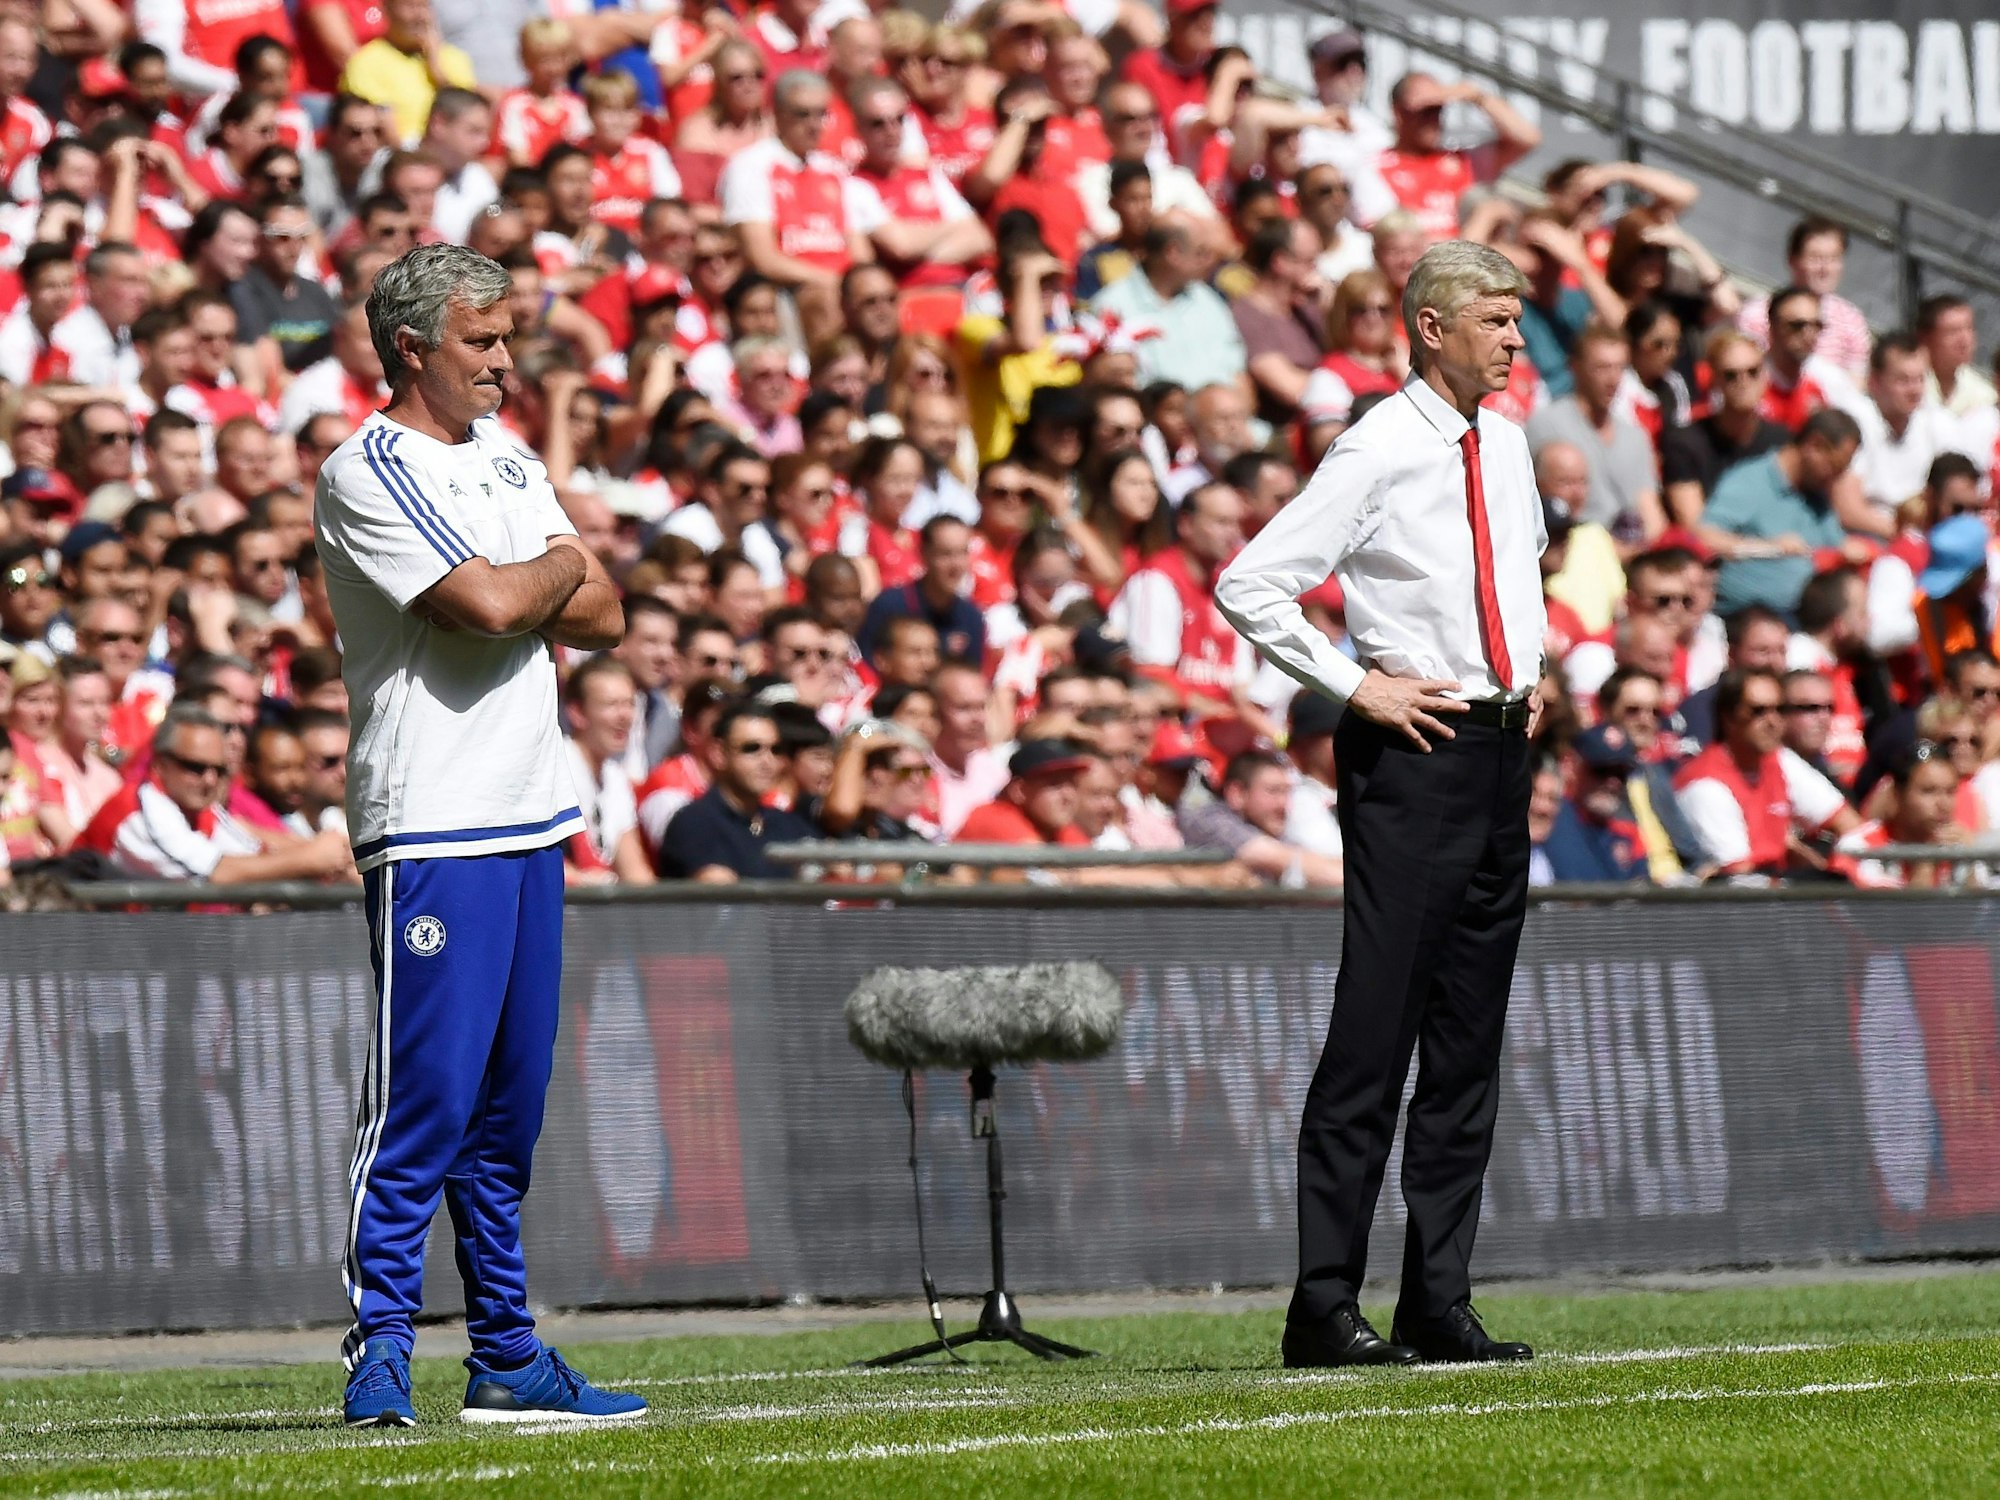 Mourinho und Wenger stehen am Spielfeldrand und beobachten das Spielgeschehen.